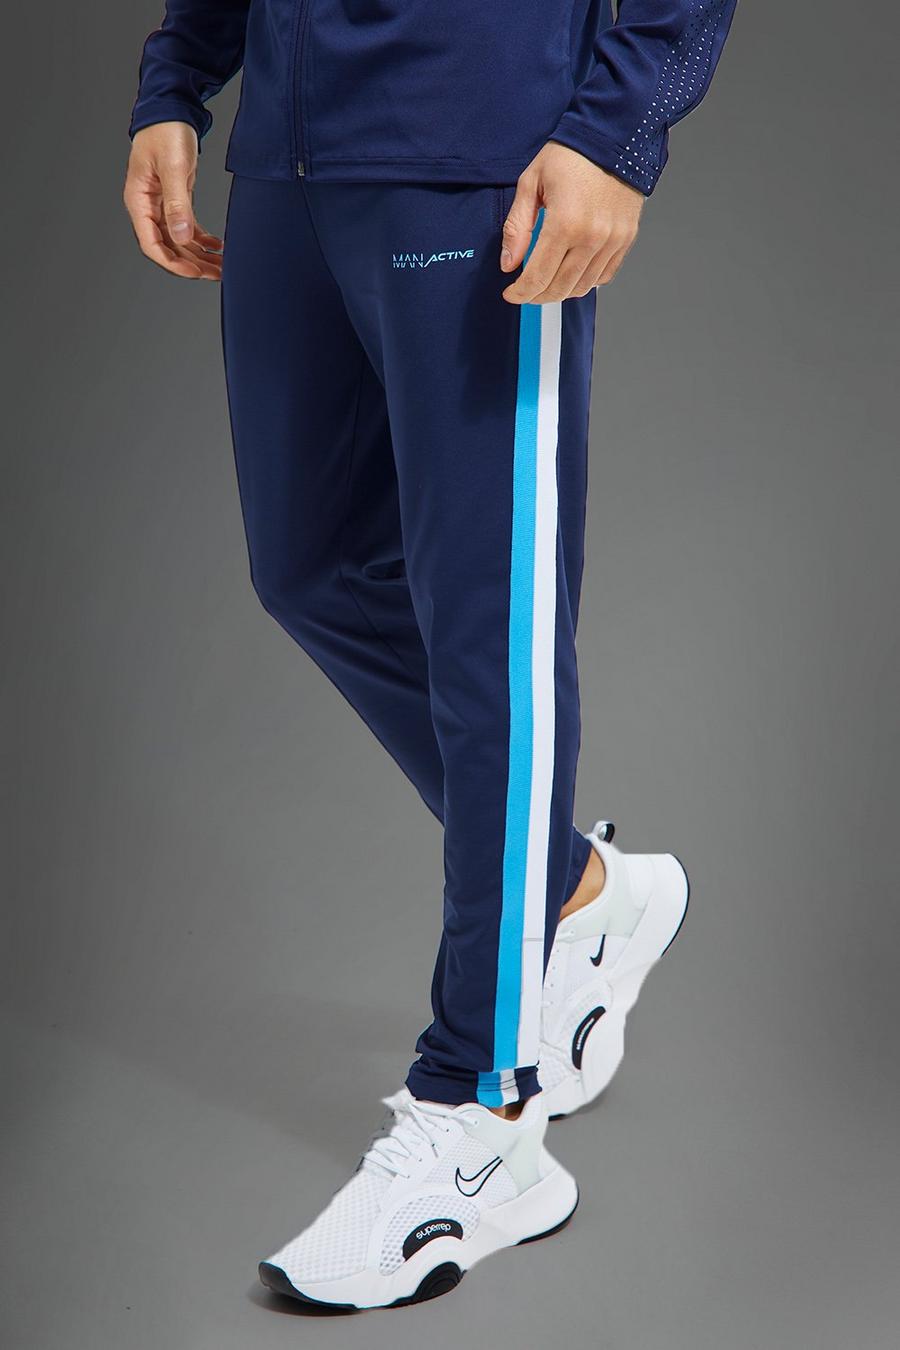 Navy blu oltremare מכנסי ריצה לאימונים בצבעים מנוגדים עם כיתוב Man Active 